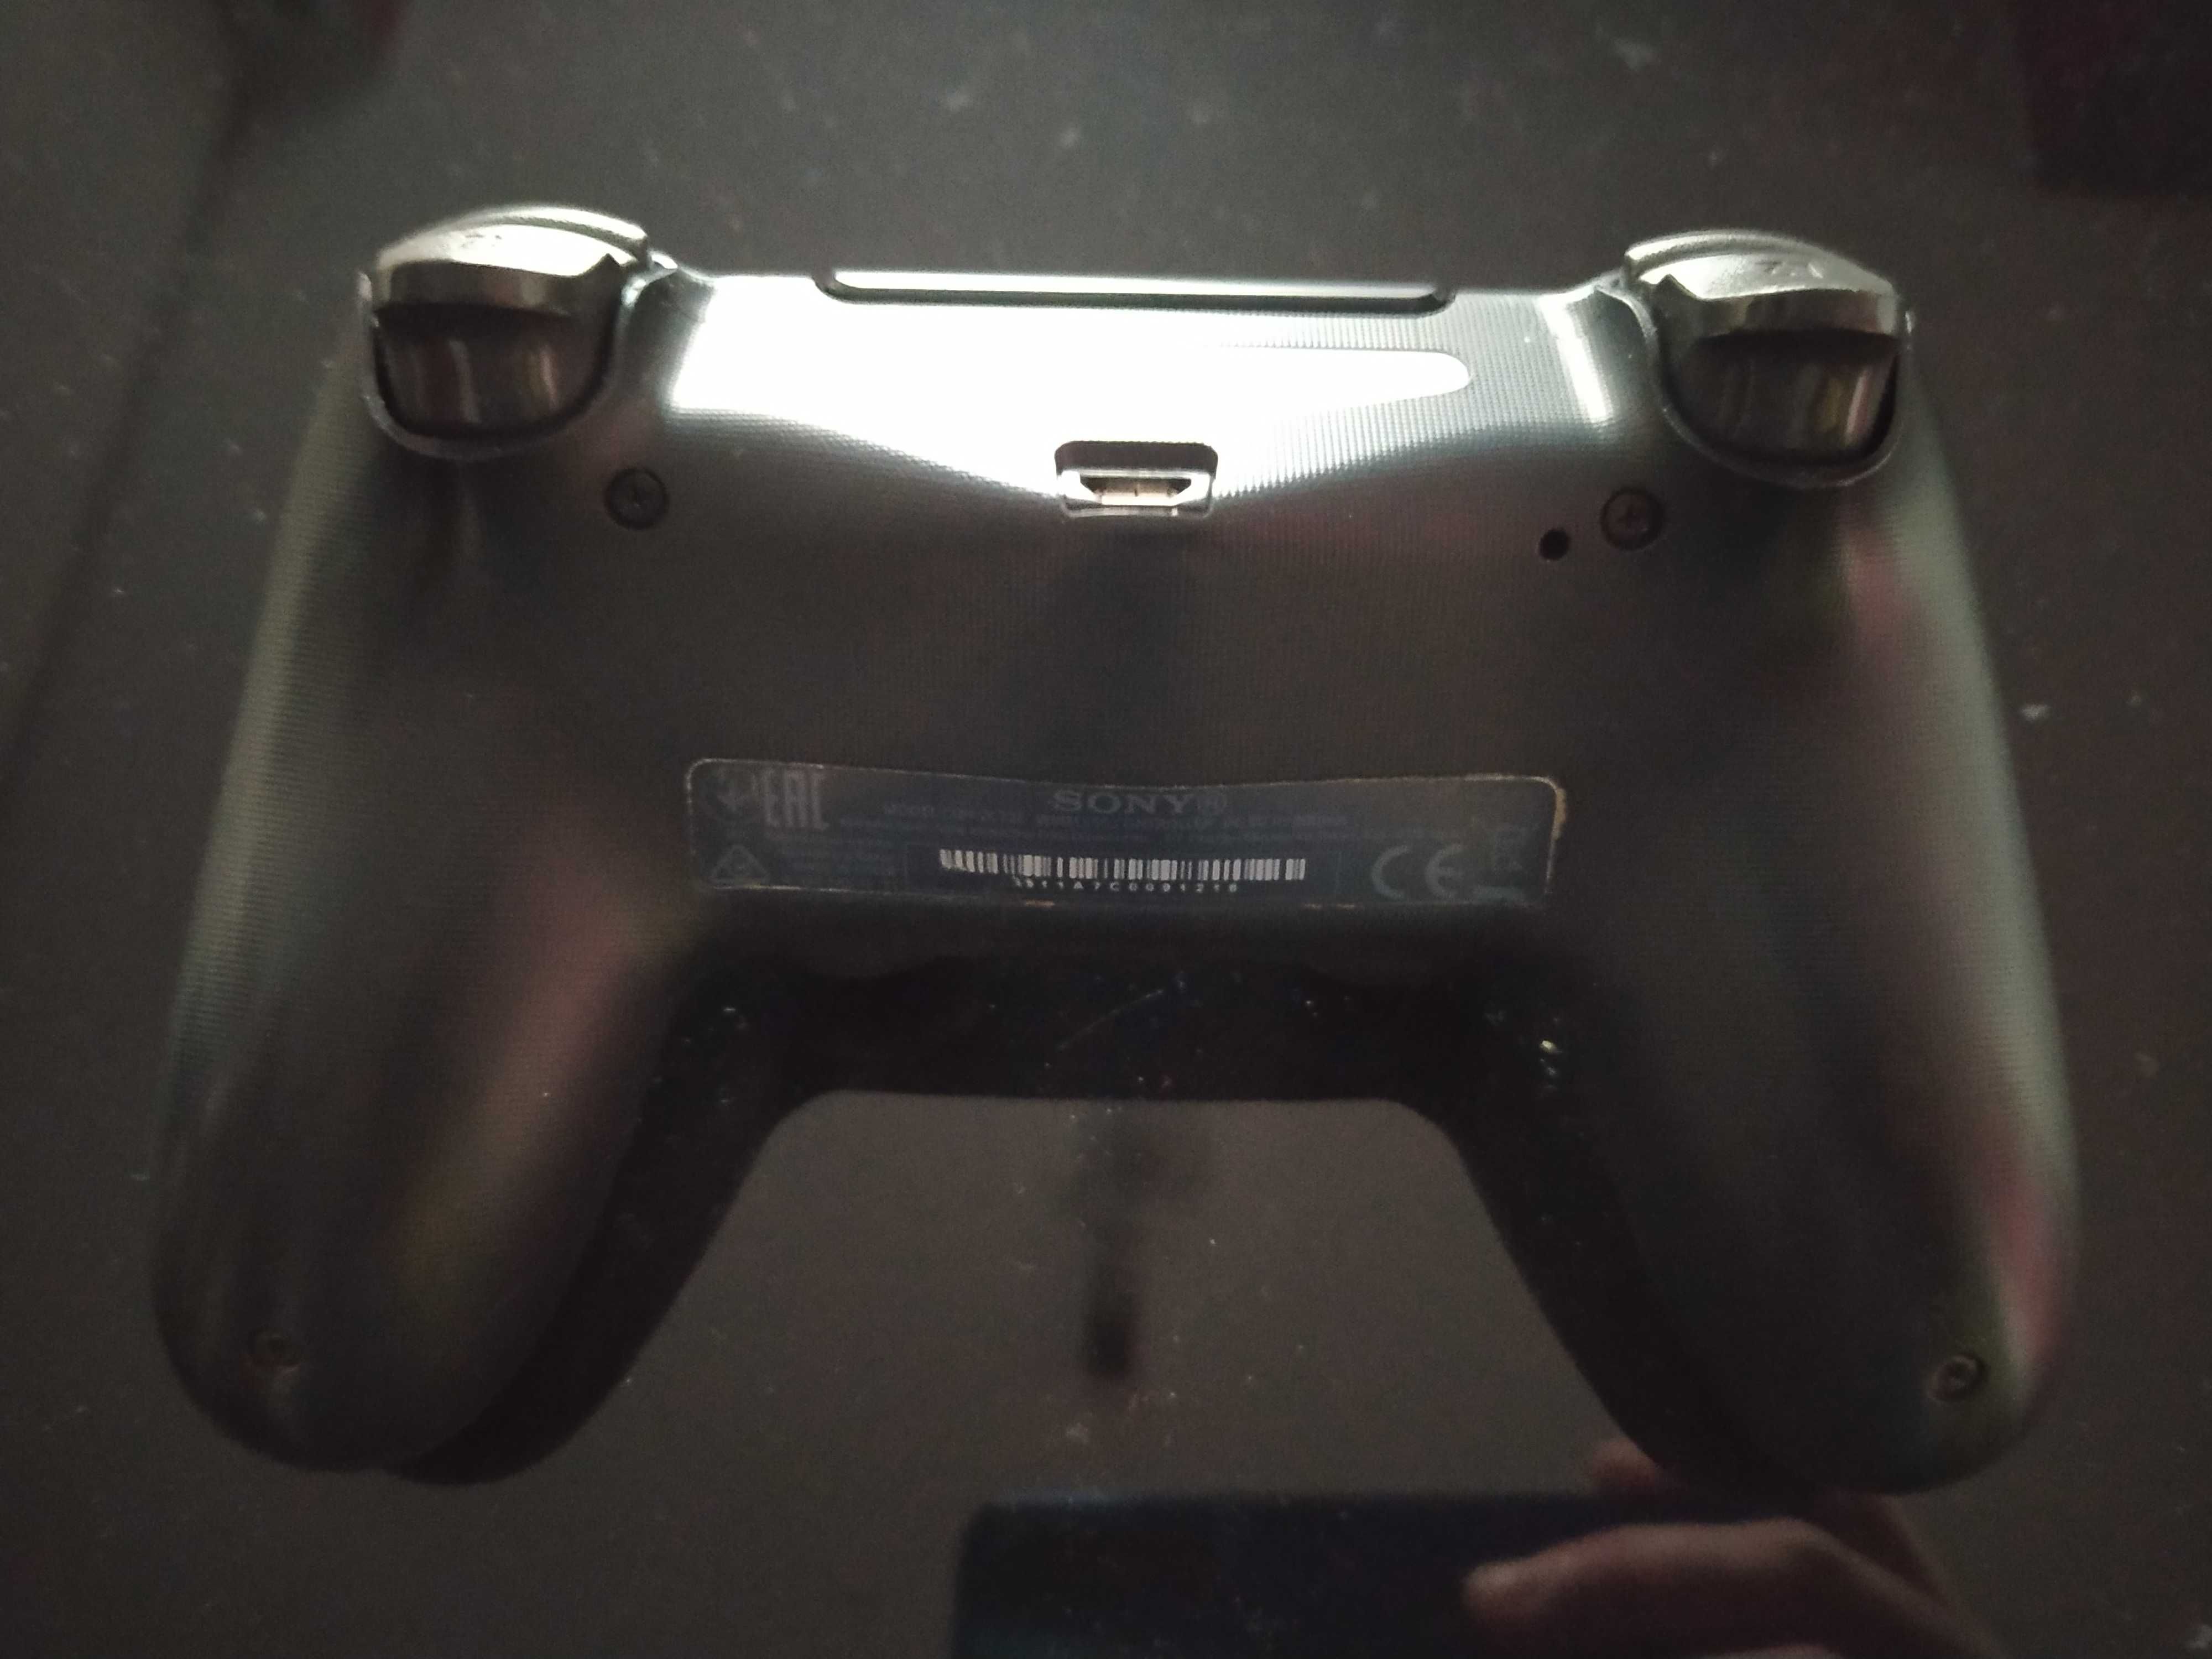 Pad kontroler do PS4 oryginalny grafitowy idealny stan